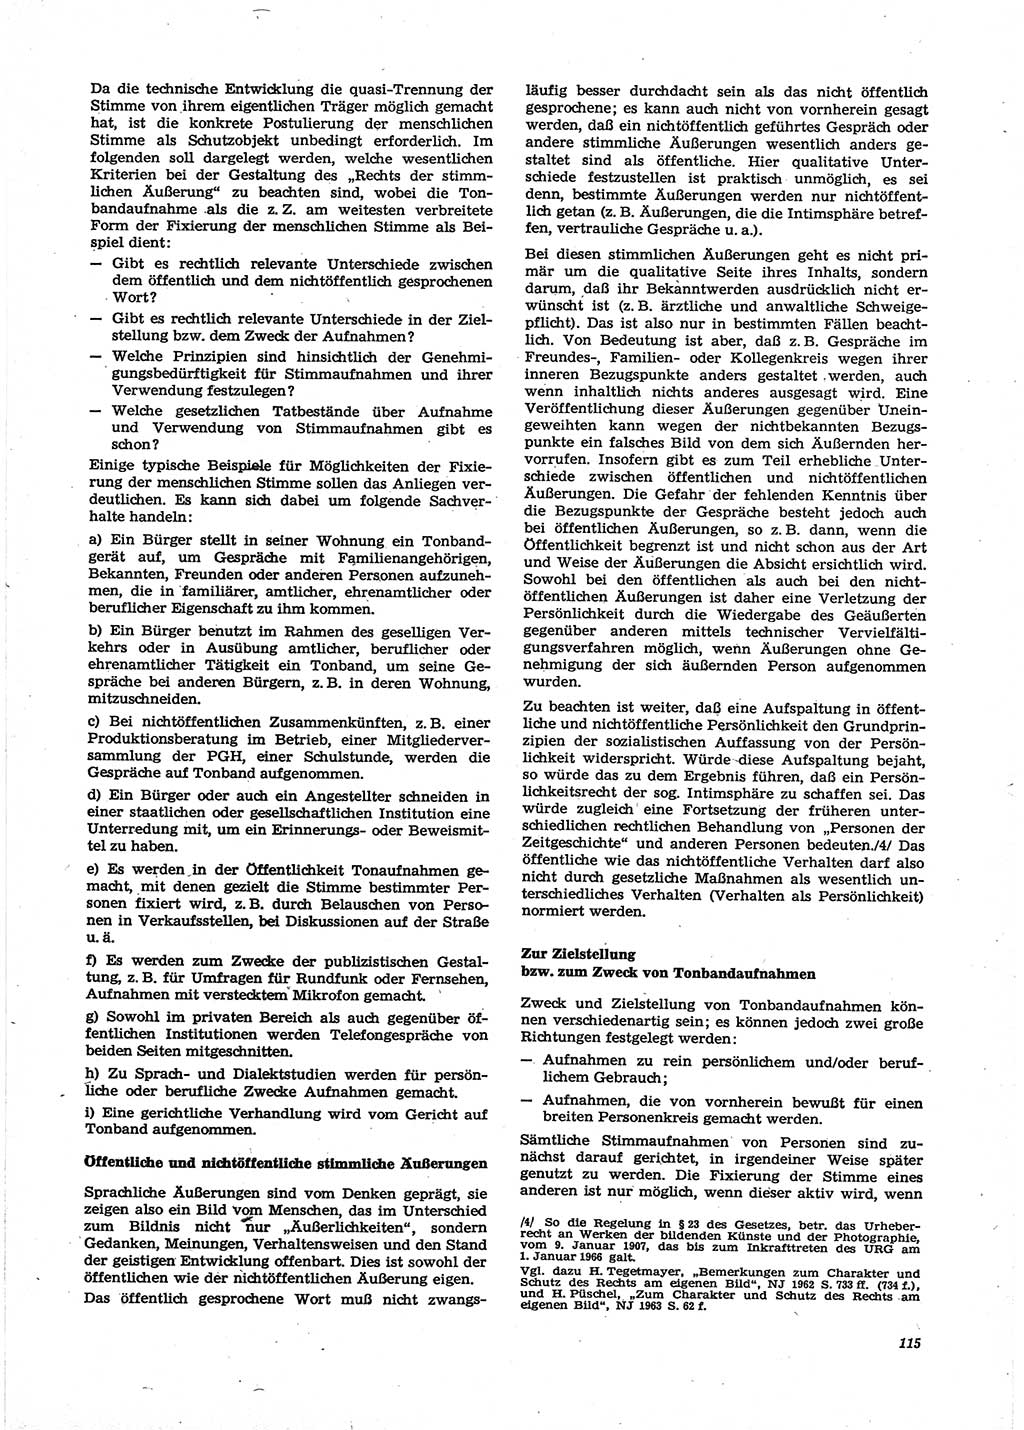 Neue Justiz (NJ), Zeitschrift für Recht und Rechtswissenschaft [Deutsche Demokratische Republik (DDR)], 29. Jahrgang 1975, Seite 115 (NJ DDR 1975, S. 115)